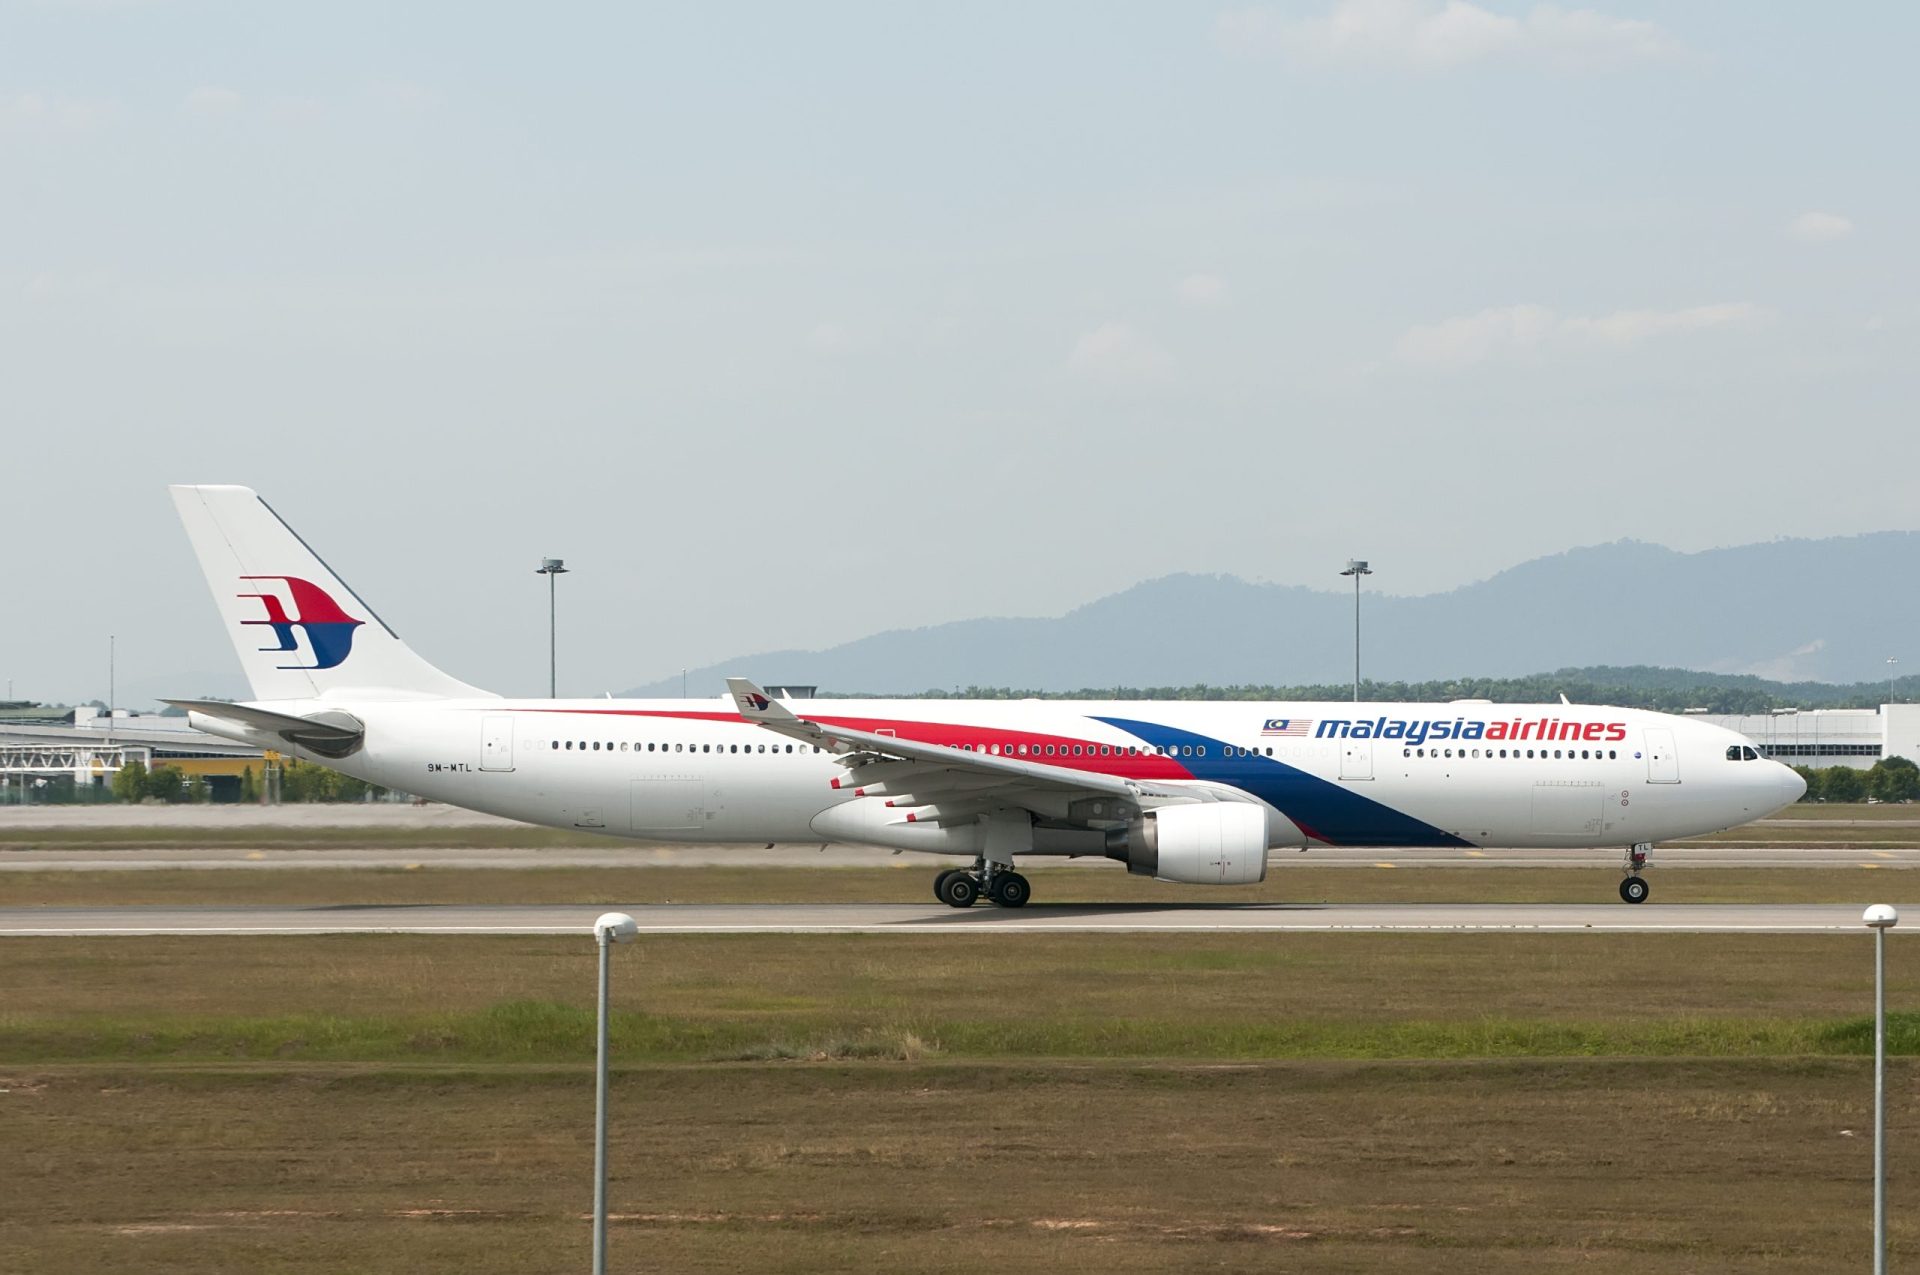 Novo susto com avião da Malaysia Airlines